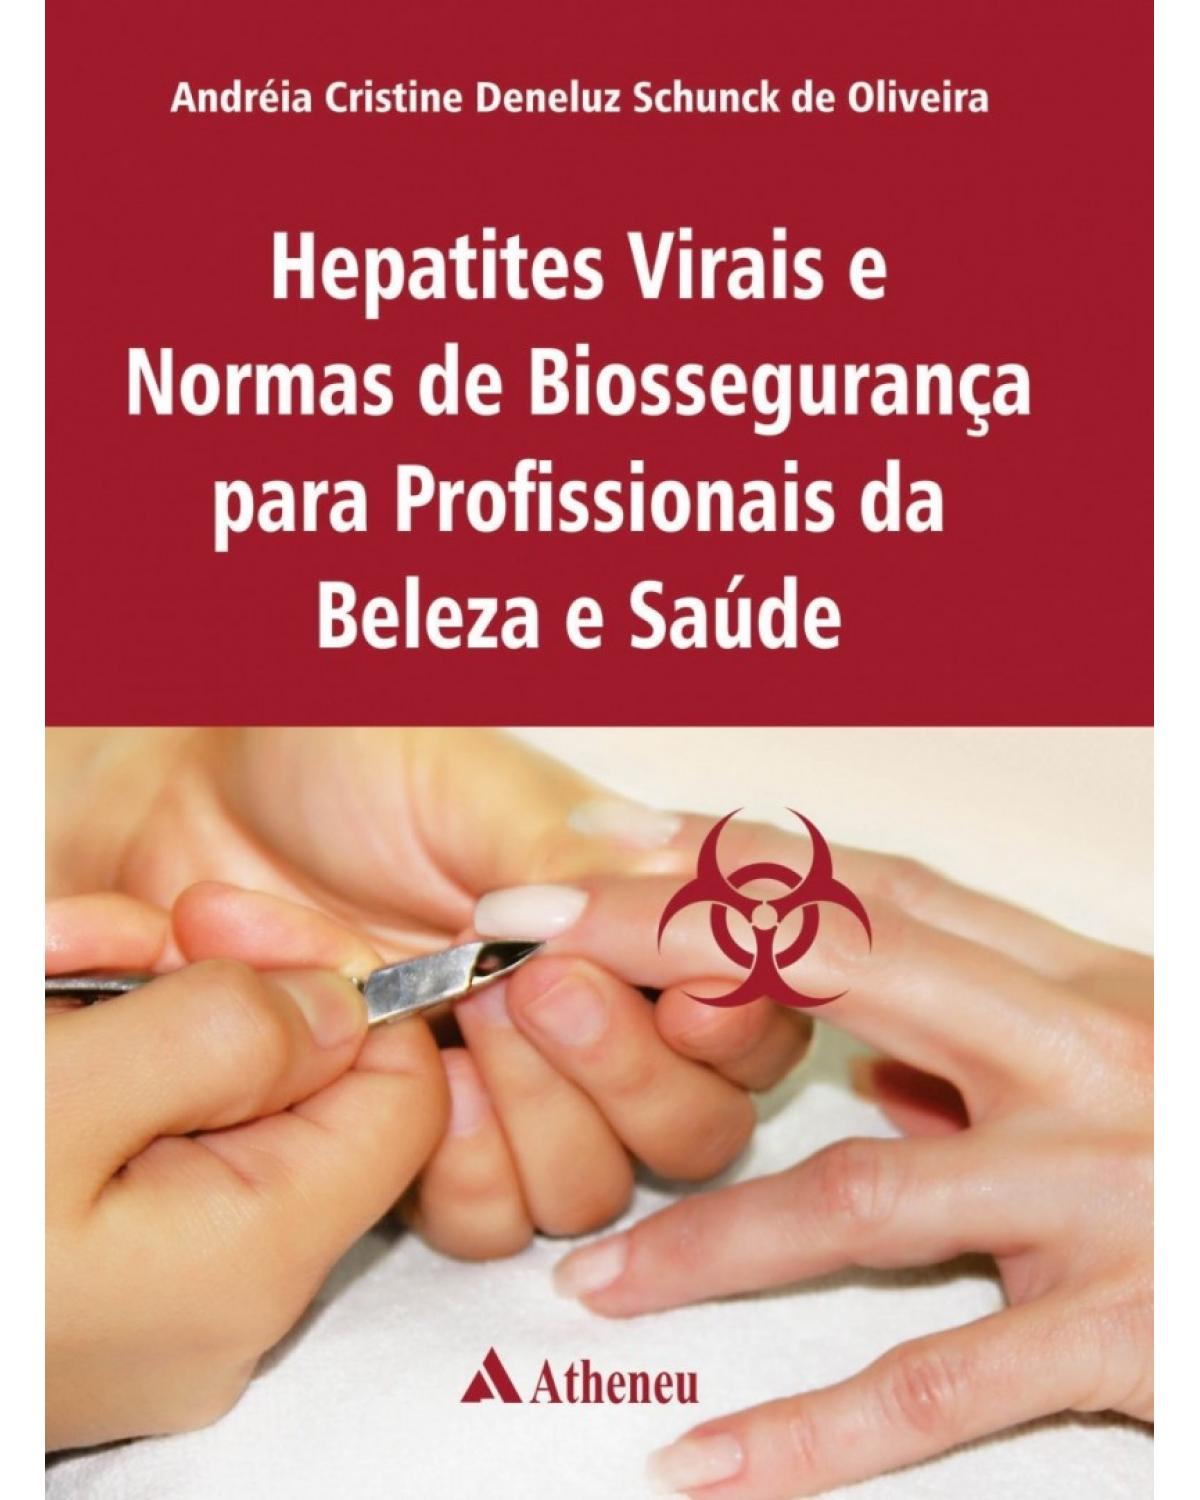 Hepatites virais e normas de biossegurança em profissionais da beleza e saúde - 1ª Edição | 2016